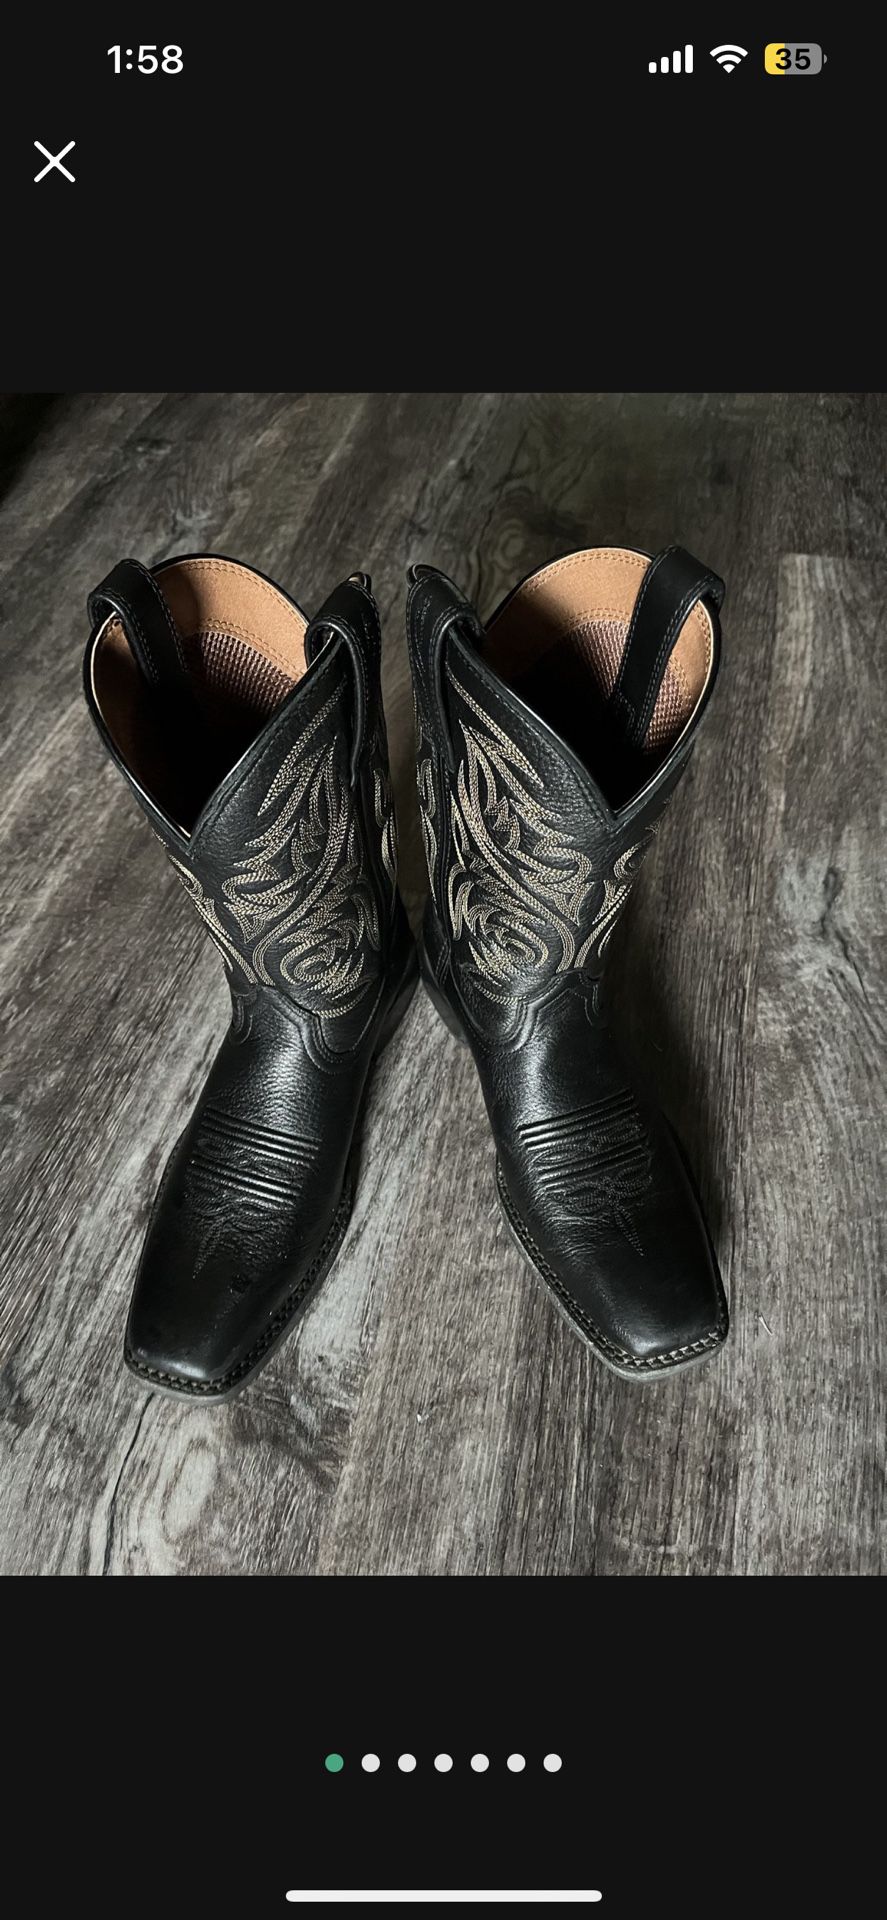 Black Ariat Cowboy Dress Boots Size 7D worn once Men's